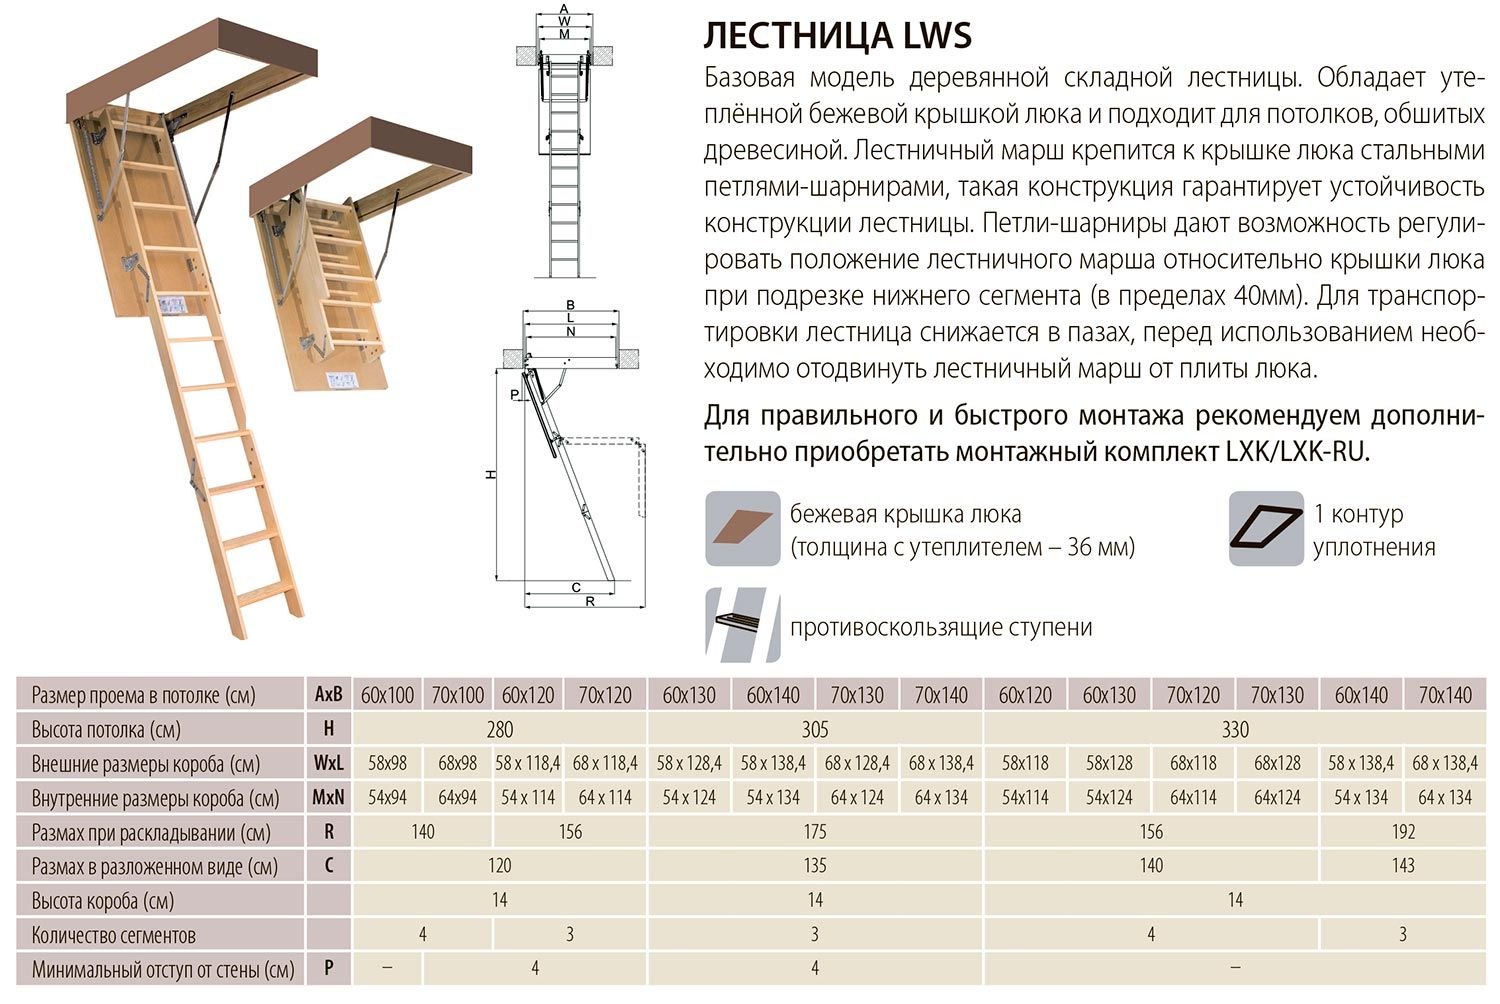 Описание, размеры и характеристики лестниц серии LWS производителя Fakro